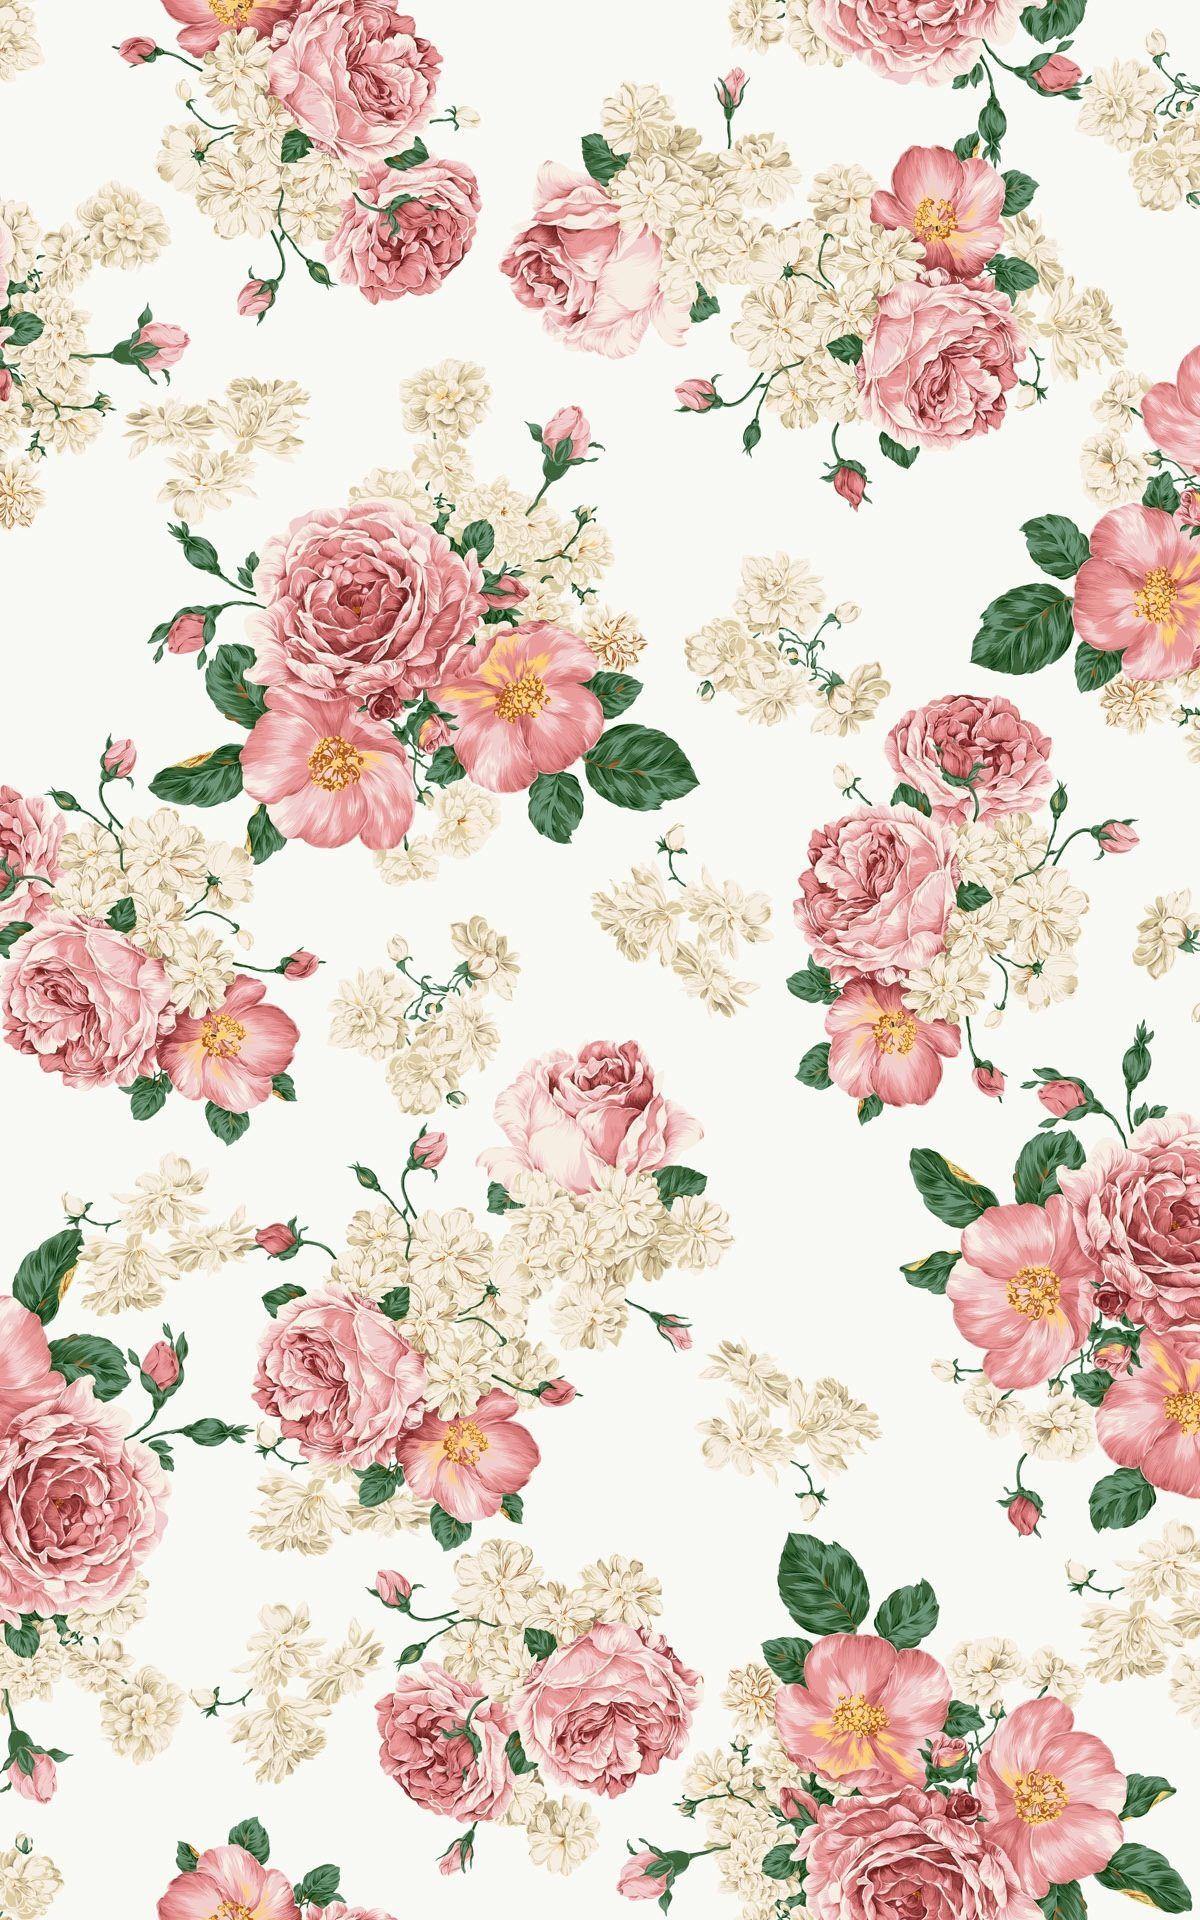 High Res Vintage Pink Flower Wallpaper. wallpaper. Floral